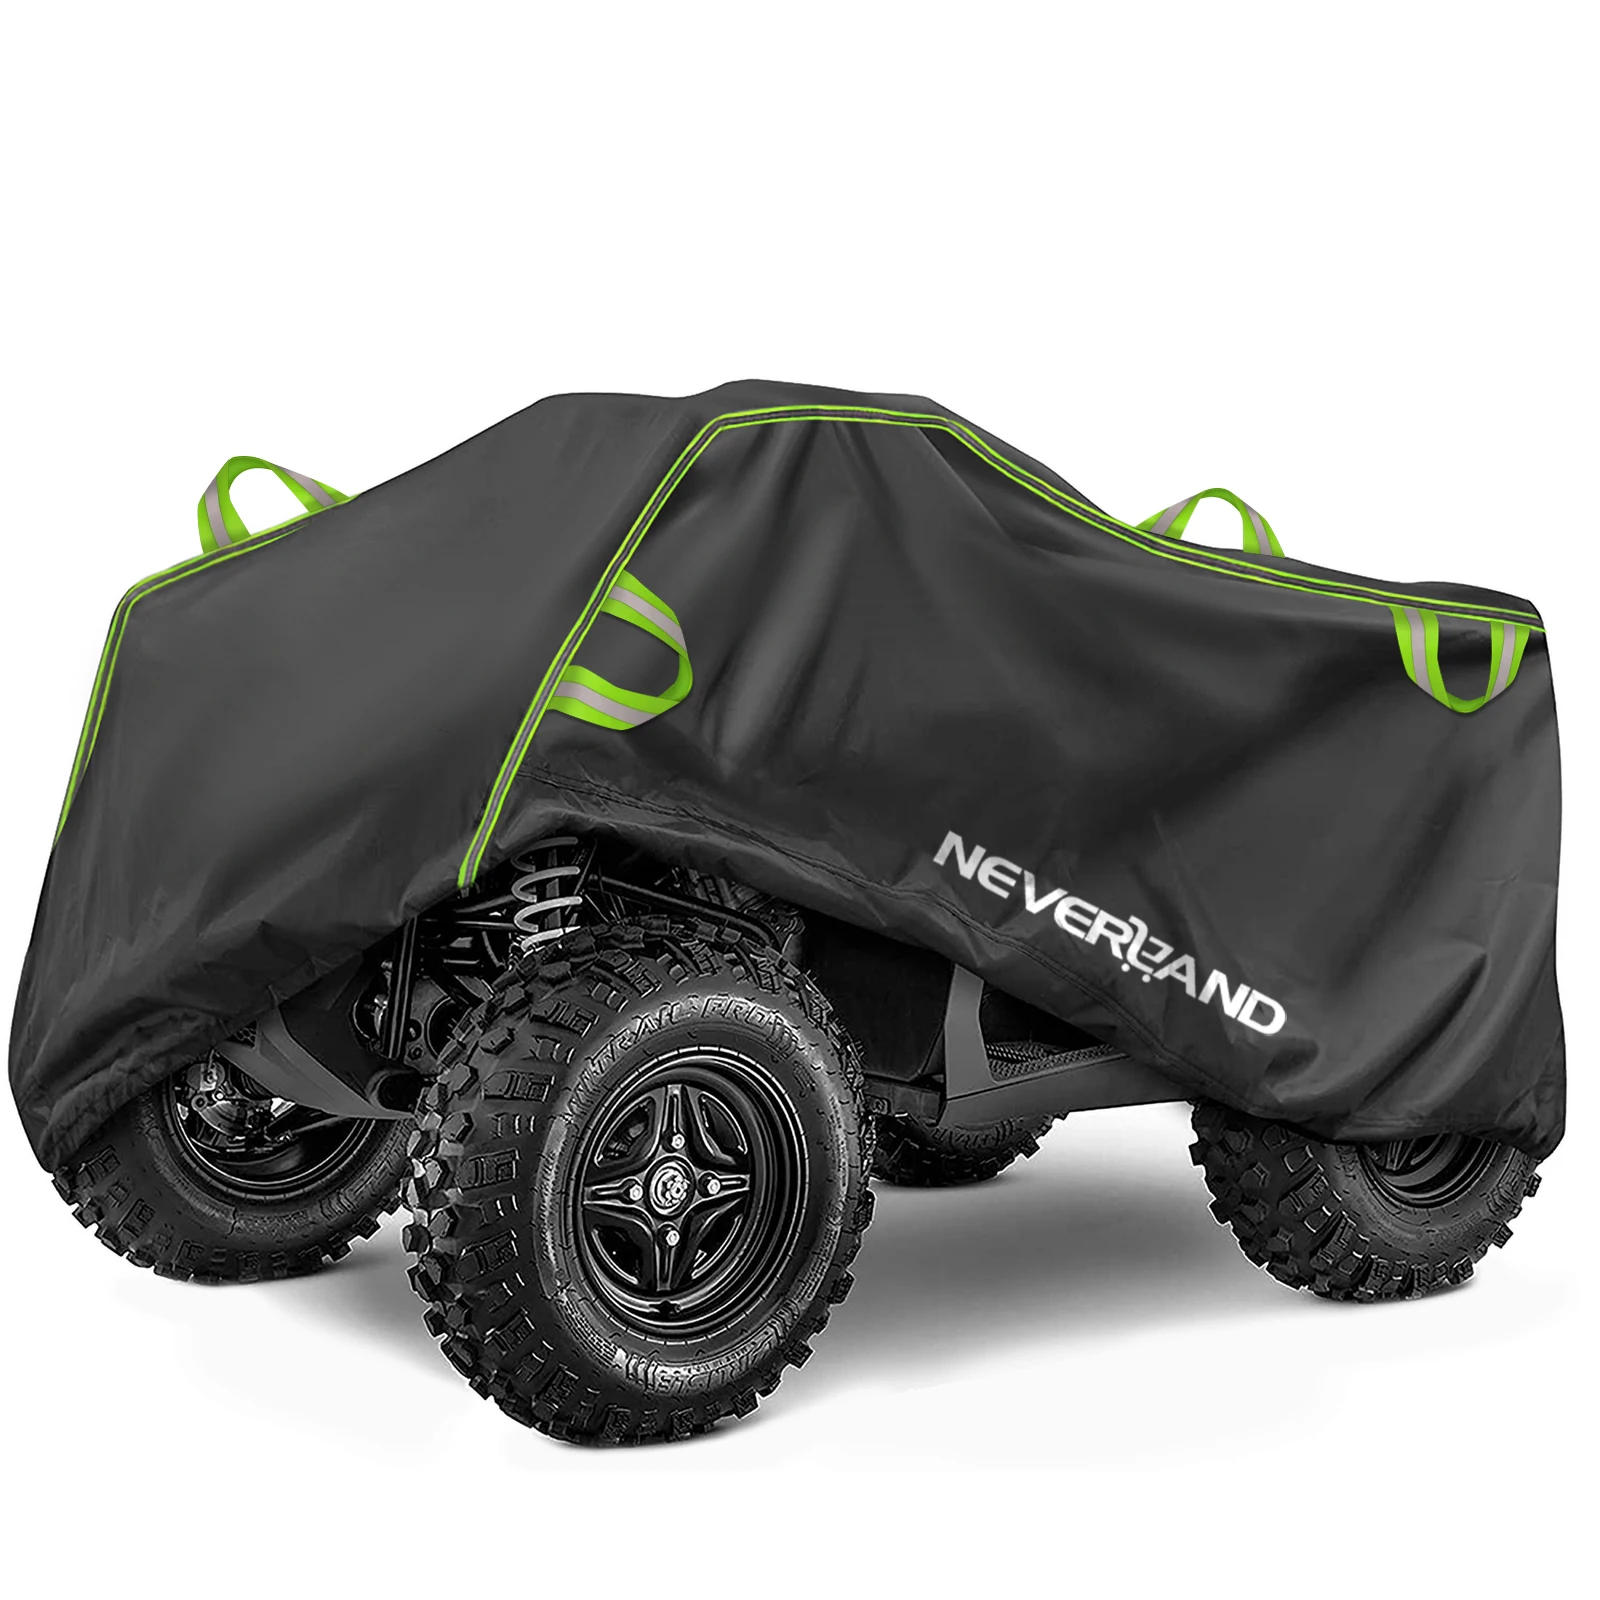  NEVERLAND 190T ATV Housse Extérieure pour Quad Bache de  Protection Camping Car Housse pour Moto Imperméable Coupe-Vent Anti-UV 210  * 120 * 115cm